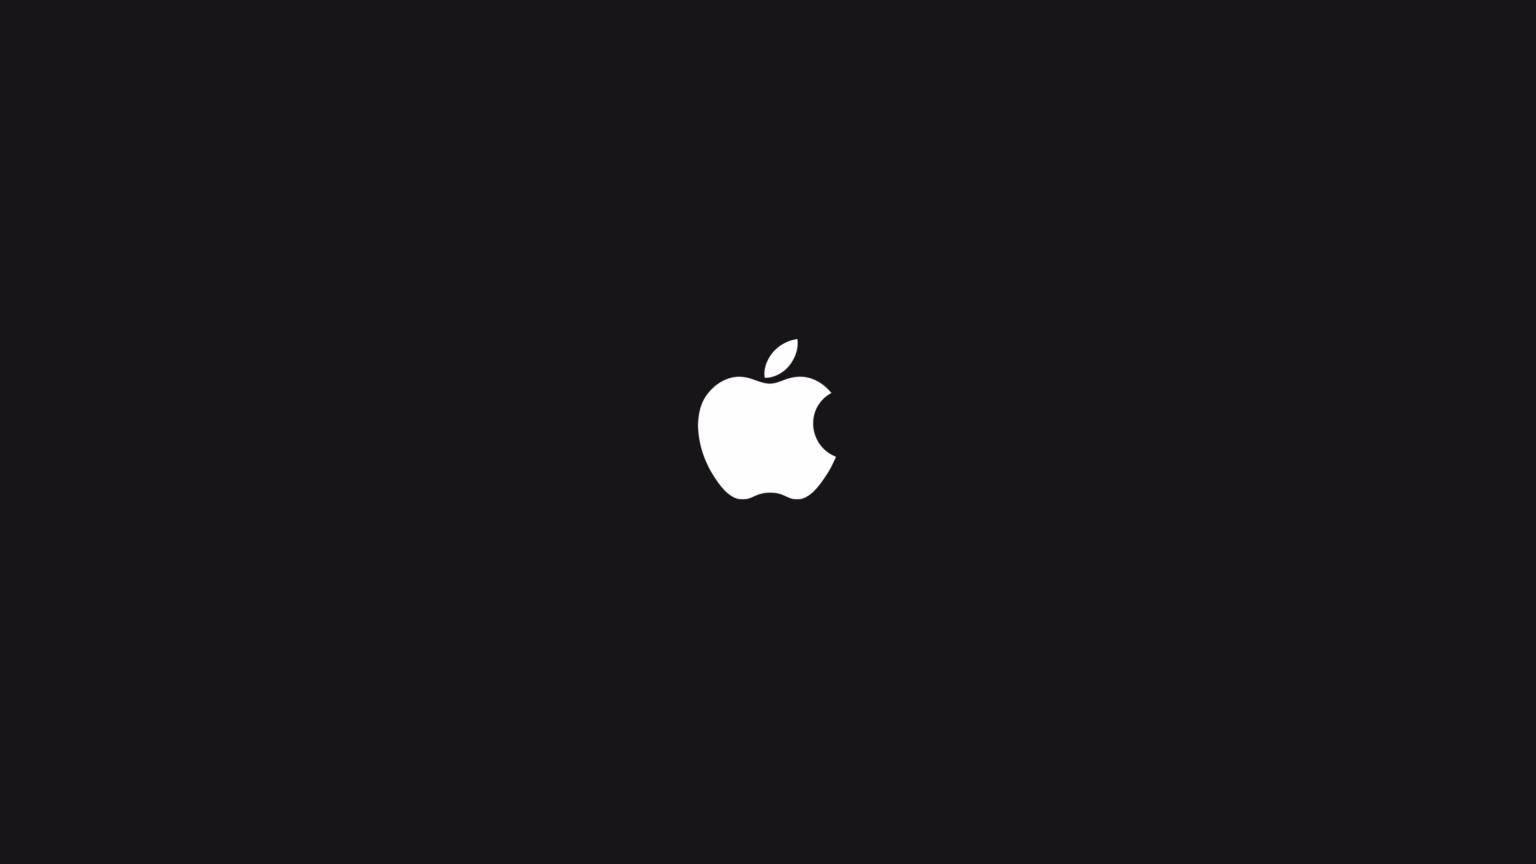 Apple Logo 4k On Dark Bagground Picture